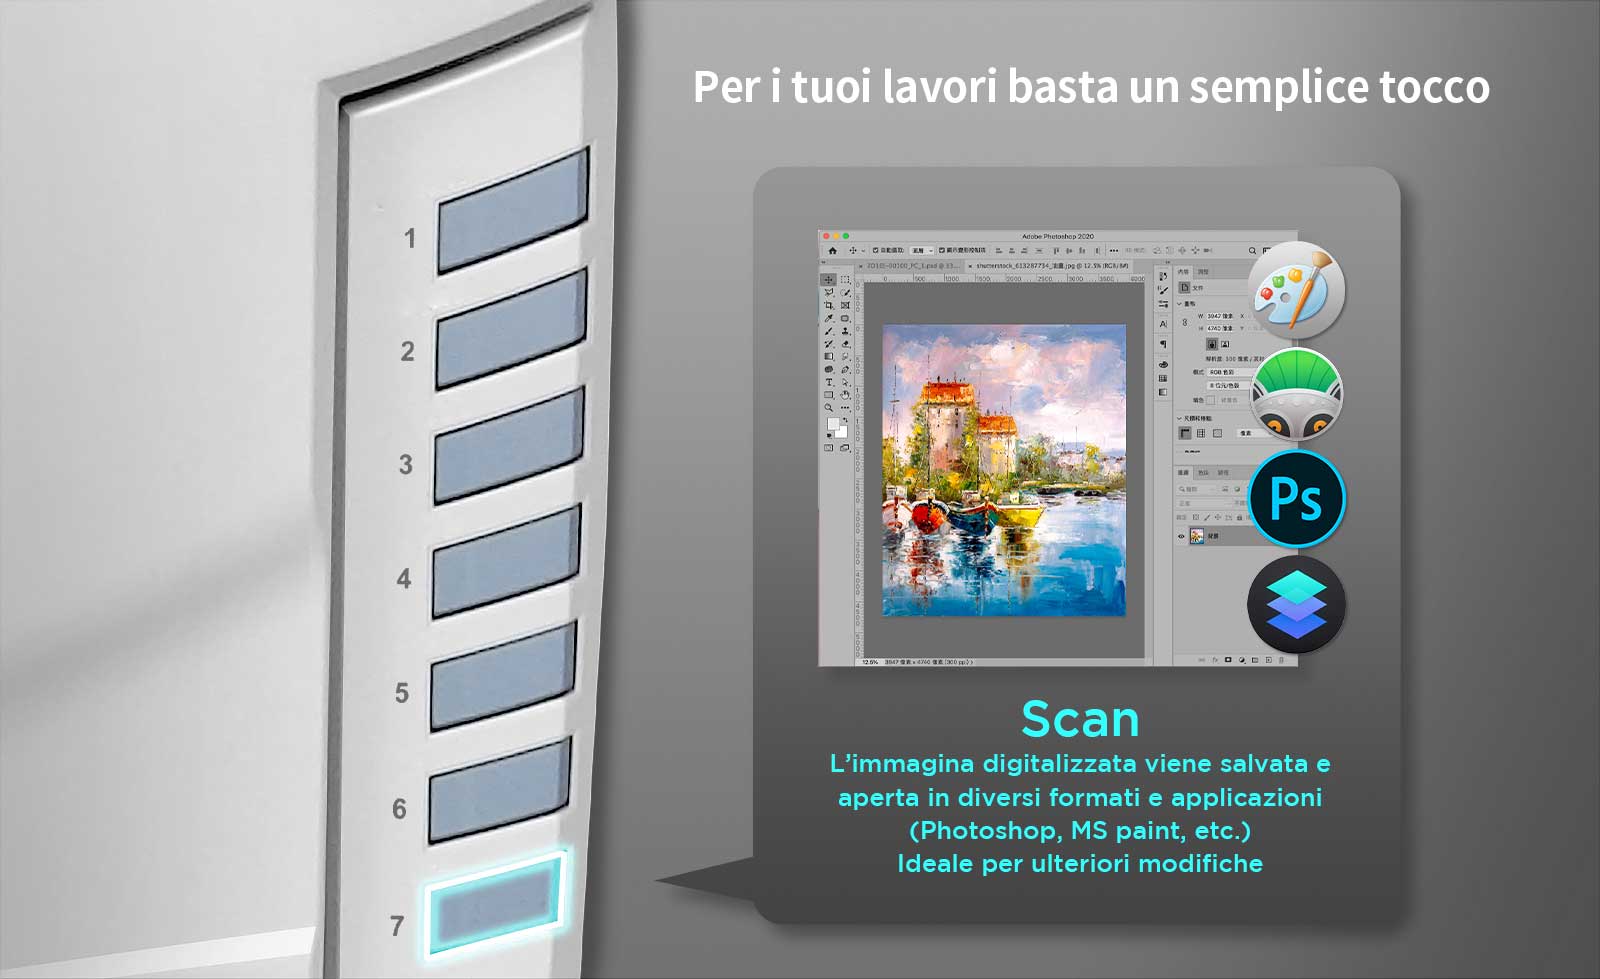 Pulsante Scan: digitaliazza e invia l'immagine a un software specifico, ad esempio Photoshop, per poterlo modificare.